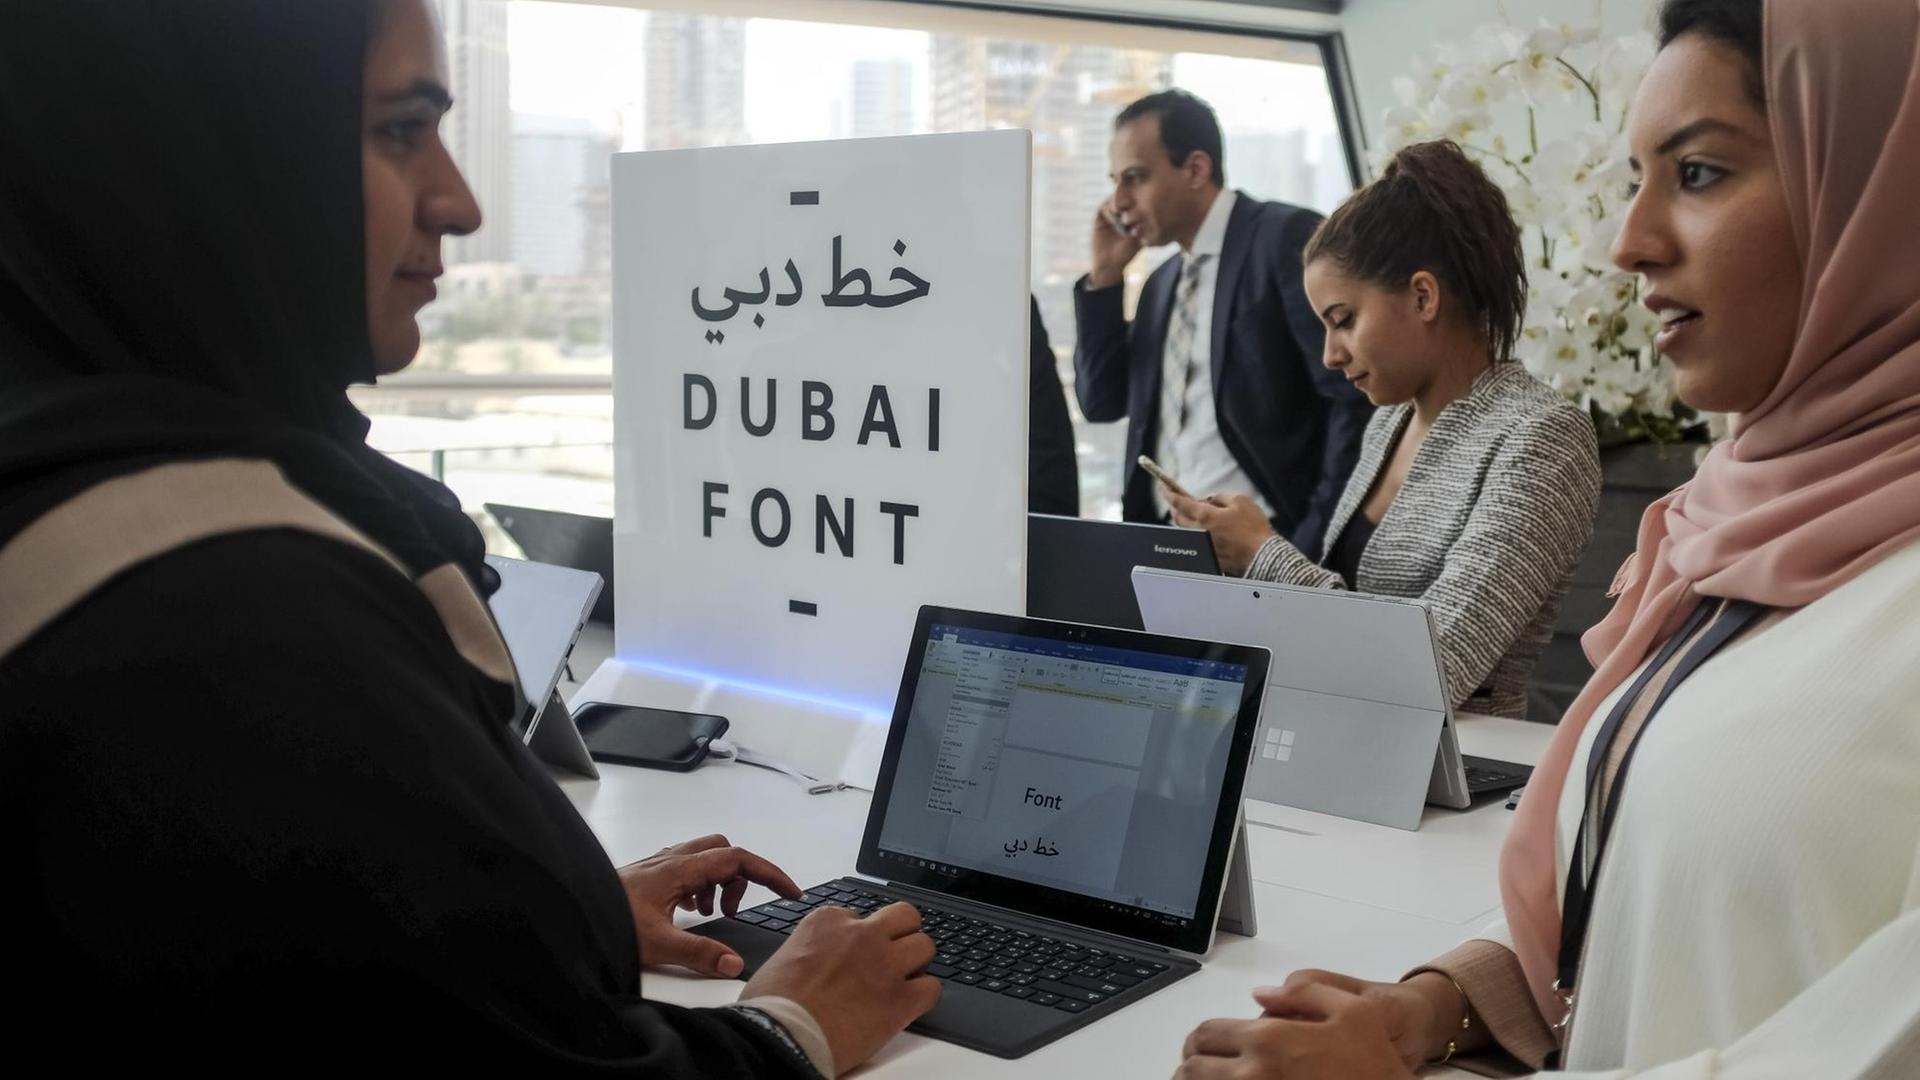 Sie sehen drei Frauenan Laptops, in der Mitte ein Schild mit der Aufschrift "DUBAI FONT". Im Hintergrund telefoniert ein Mann.